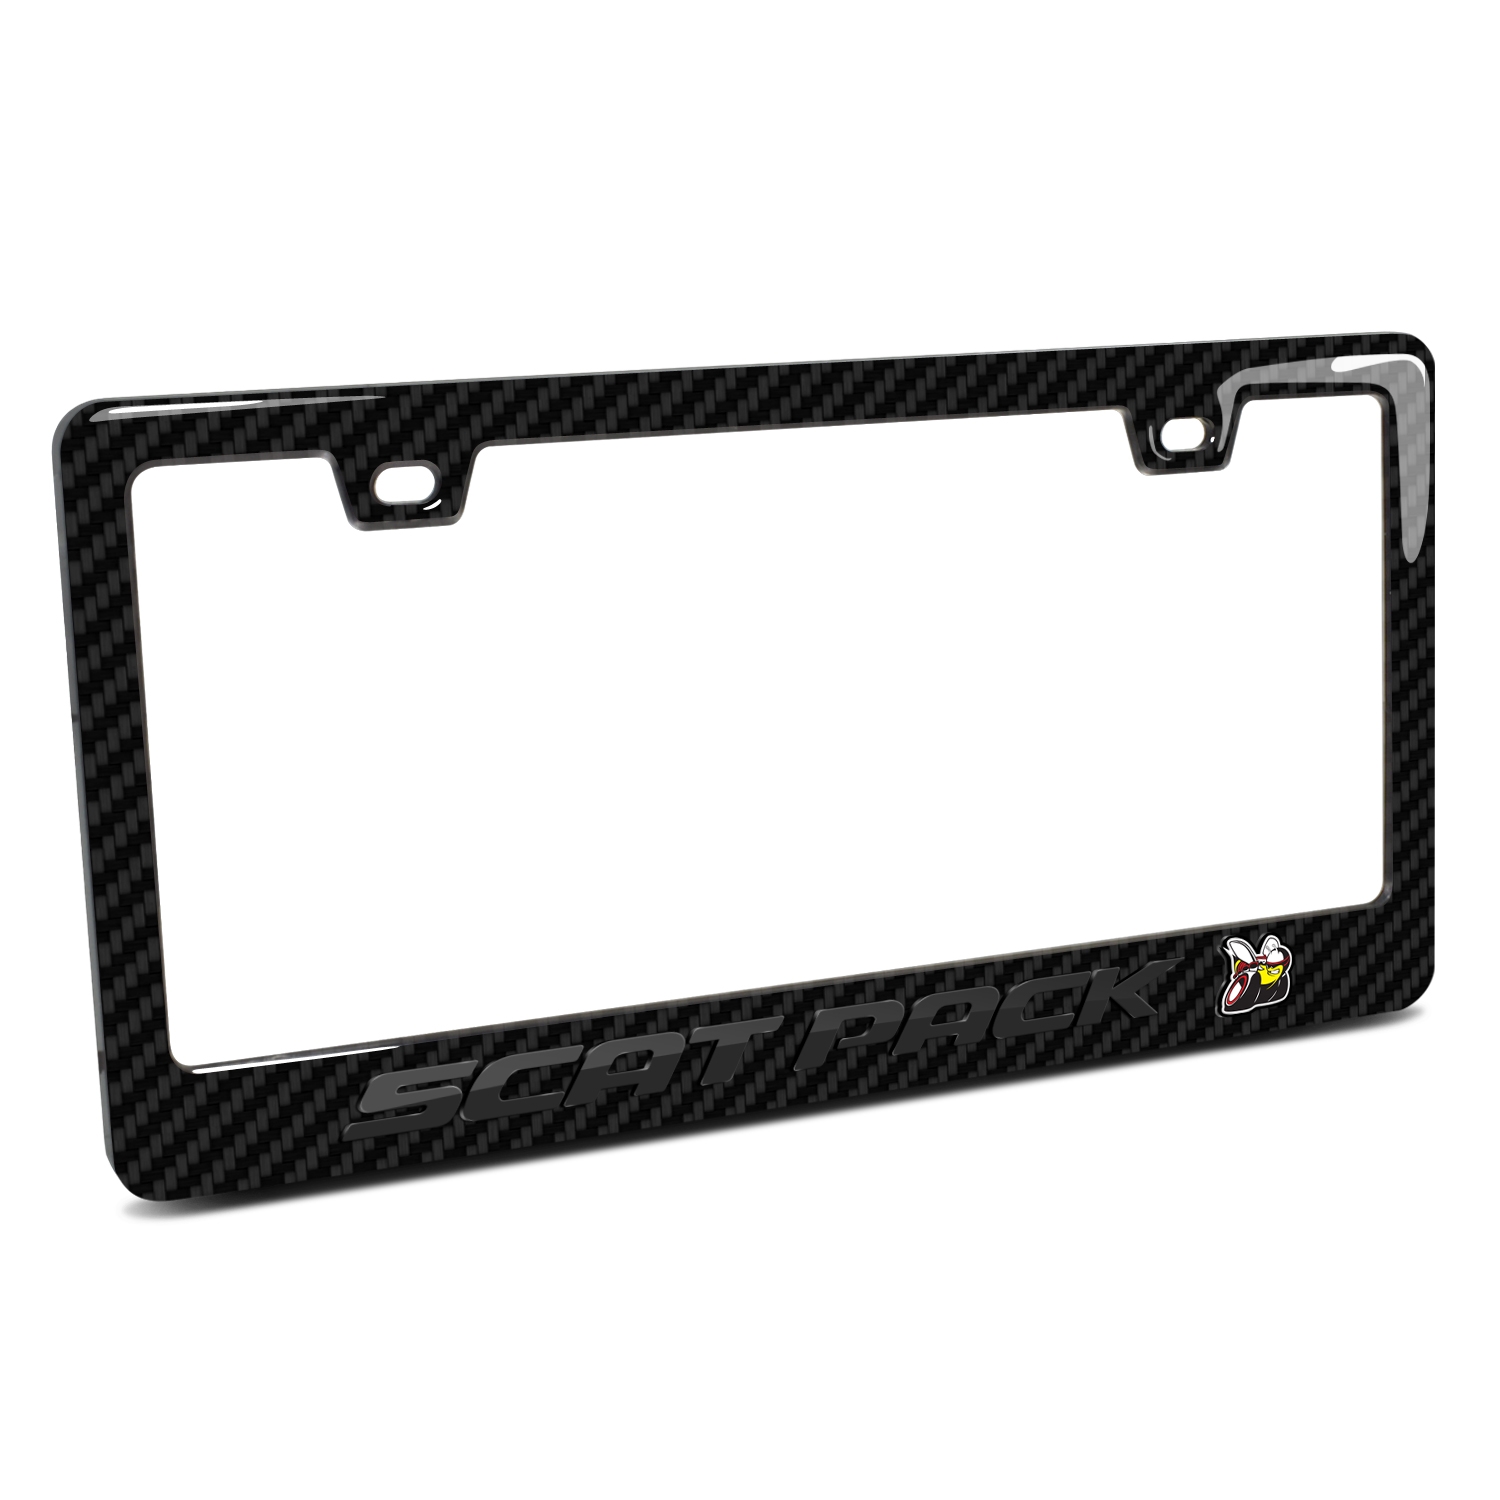 Dodge Scat-Pack Full Color in 3D Black on Black Real 3K Carbon Fiber Finish ABS Plastic License Plate Frame